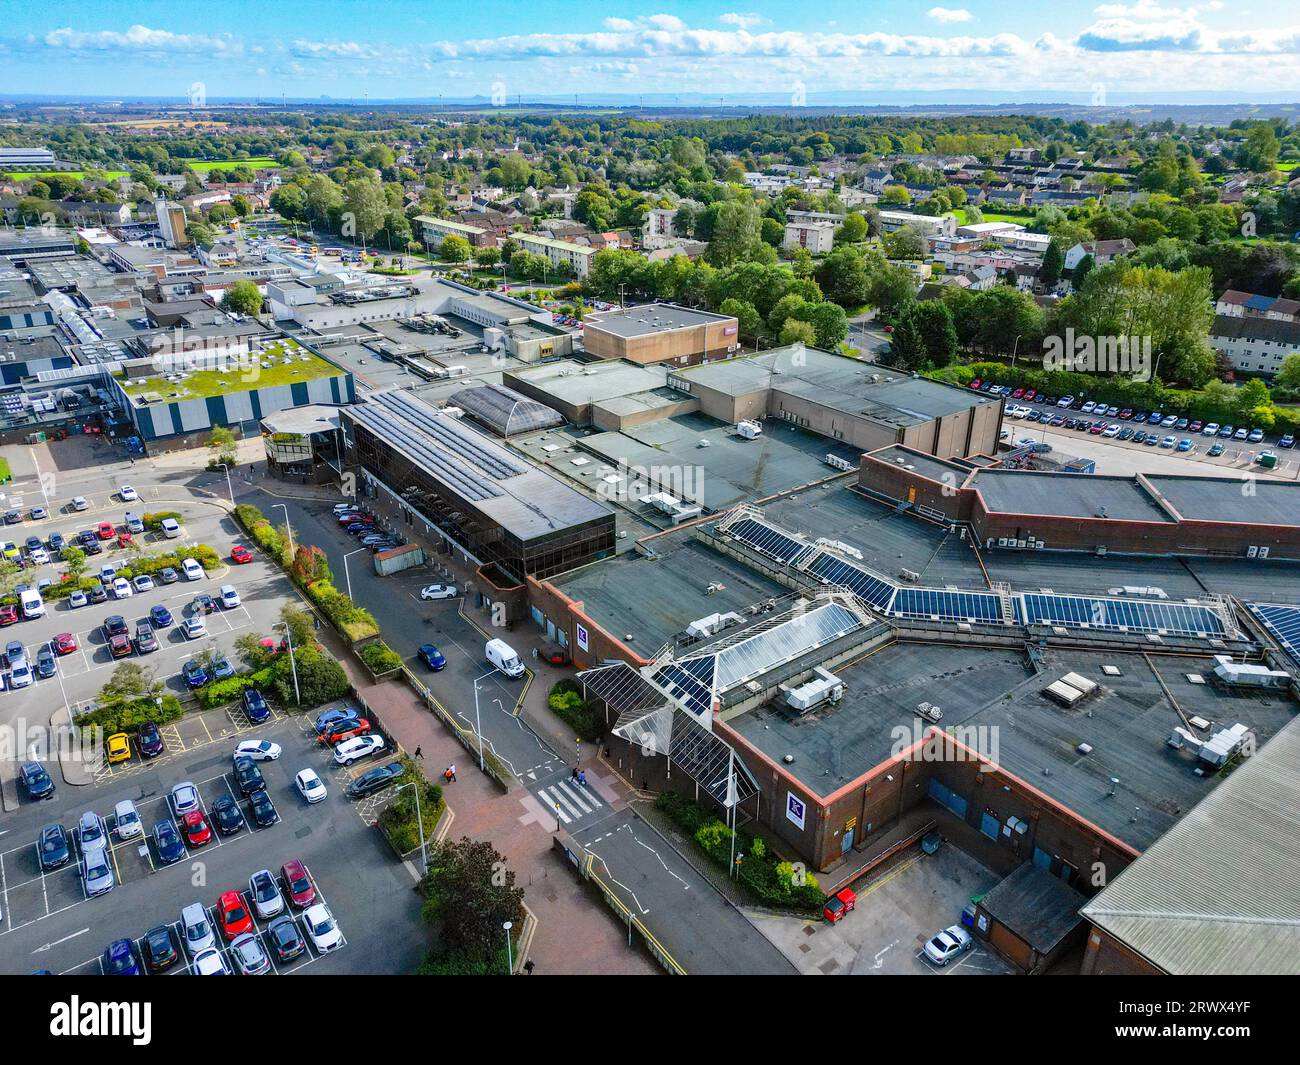 Vue aérienne du centre commercial Kingdom dans le parc de vente au détail dans le centre-ville Glenrothes nouvelle ville , Fife, Écosse, Royaume-Uni Banque D'Images